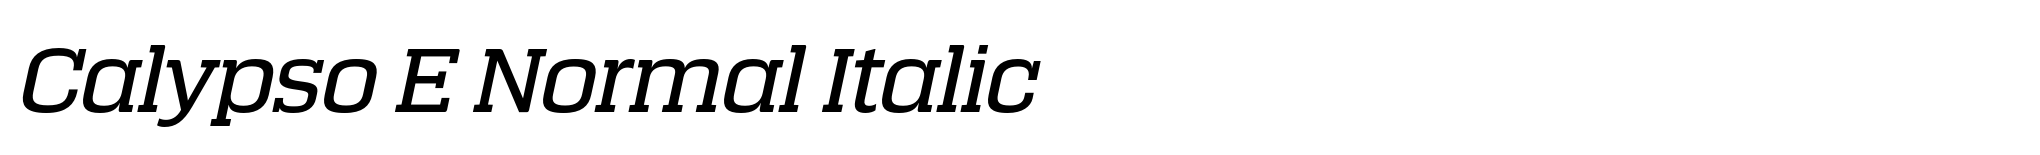 Calypso E Normal Italic image